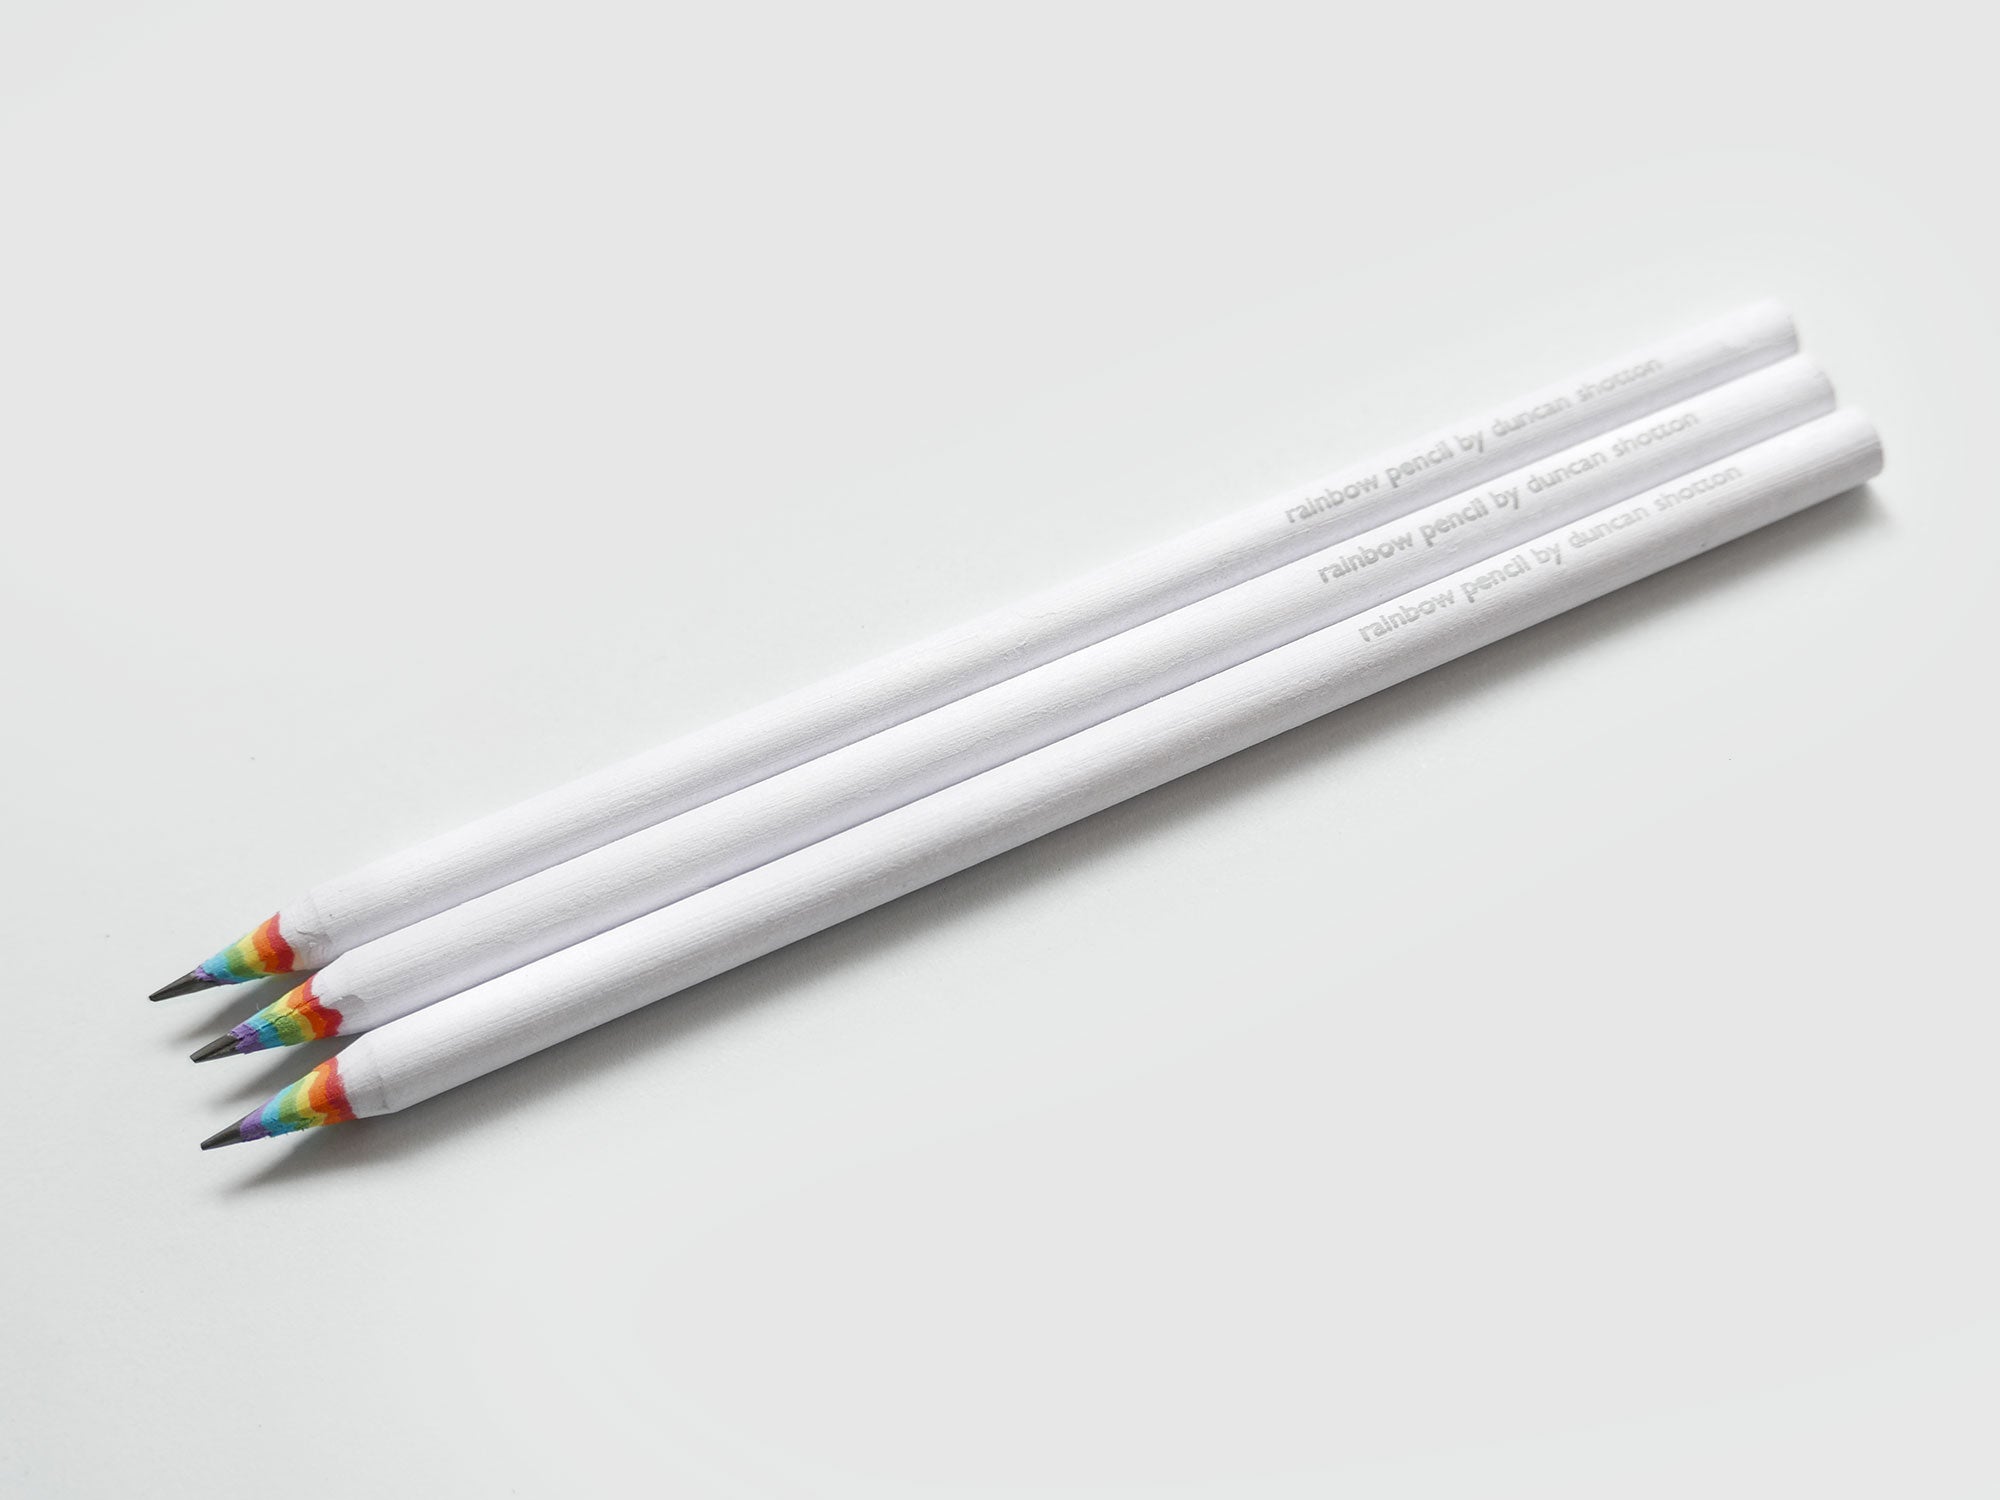 Rainbow Pencils by Duncan Shotton — Kickstarter